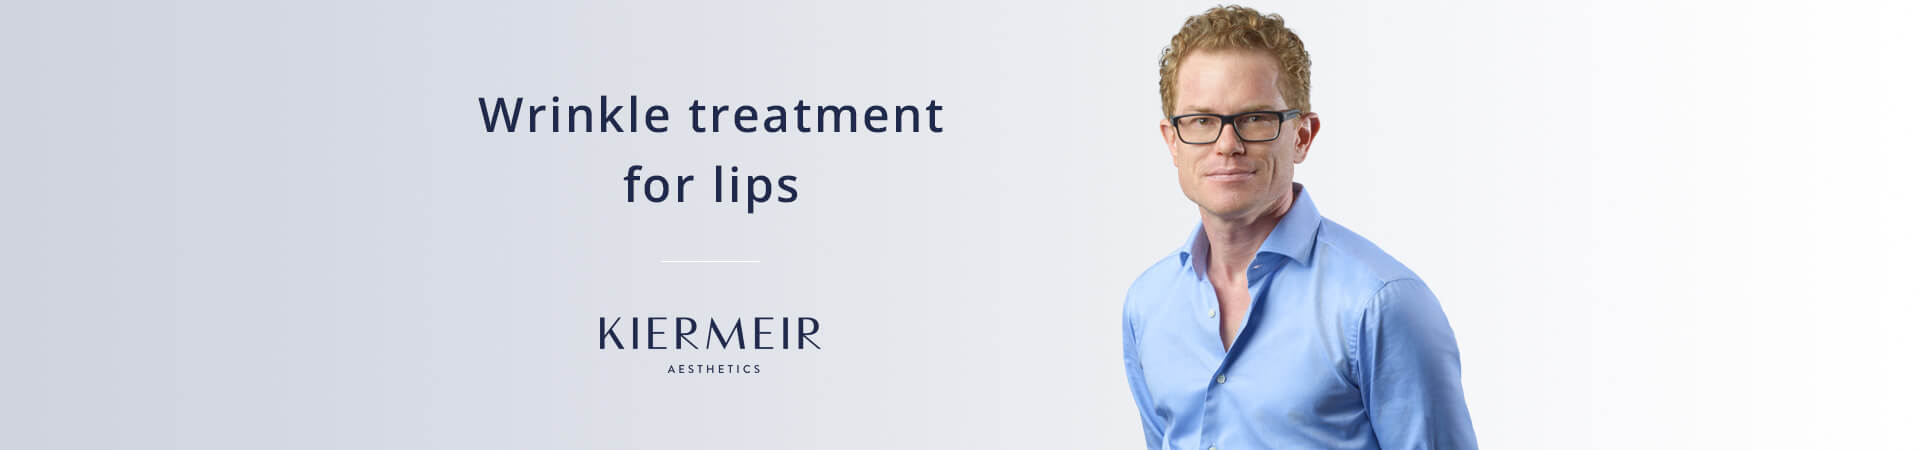 Wrinkle Treatment Lips in Bern by Dr. Kiermeir 